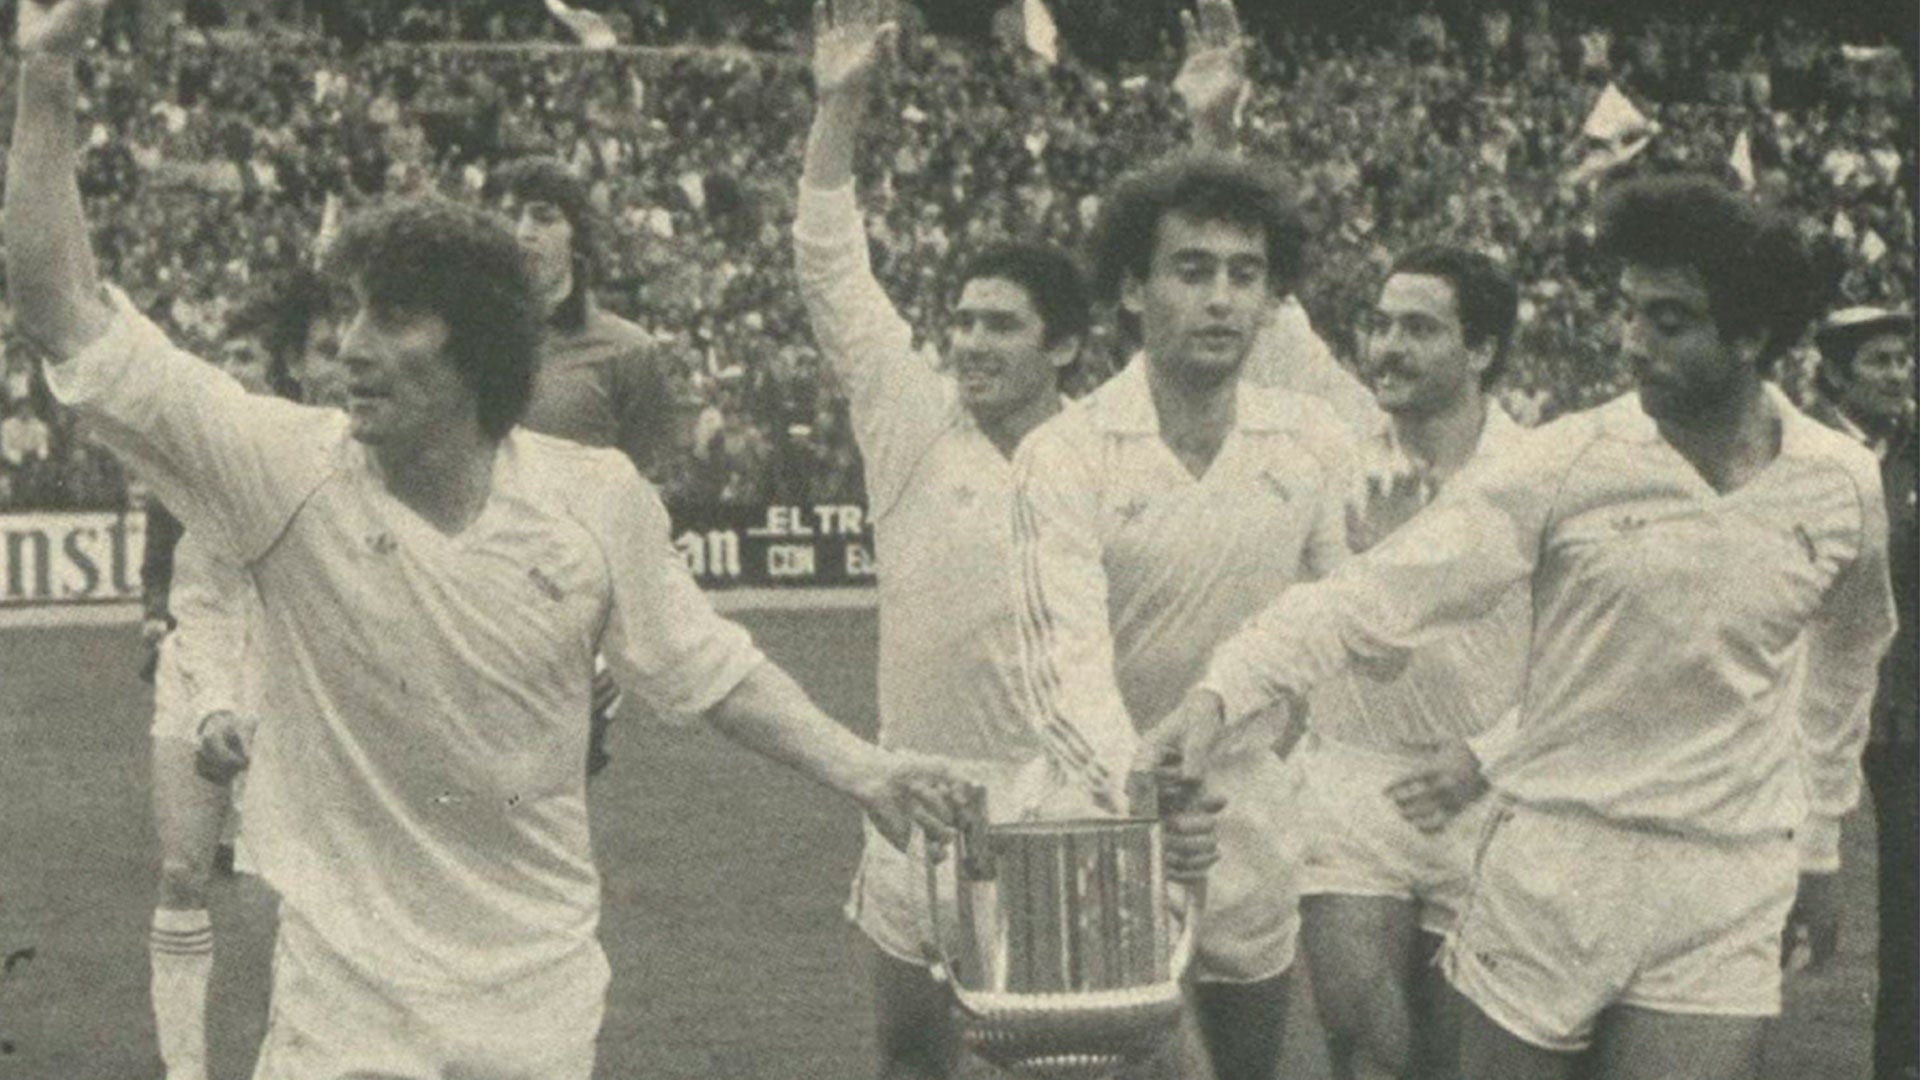 42 years since the 15th Copa de España